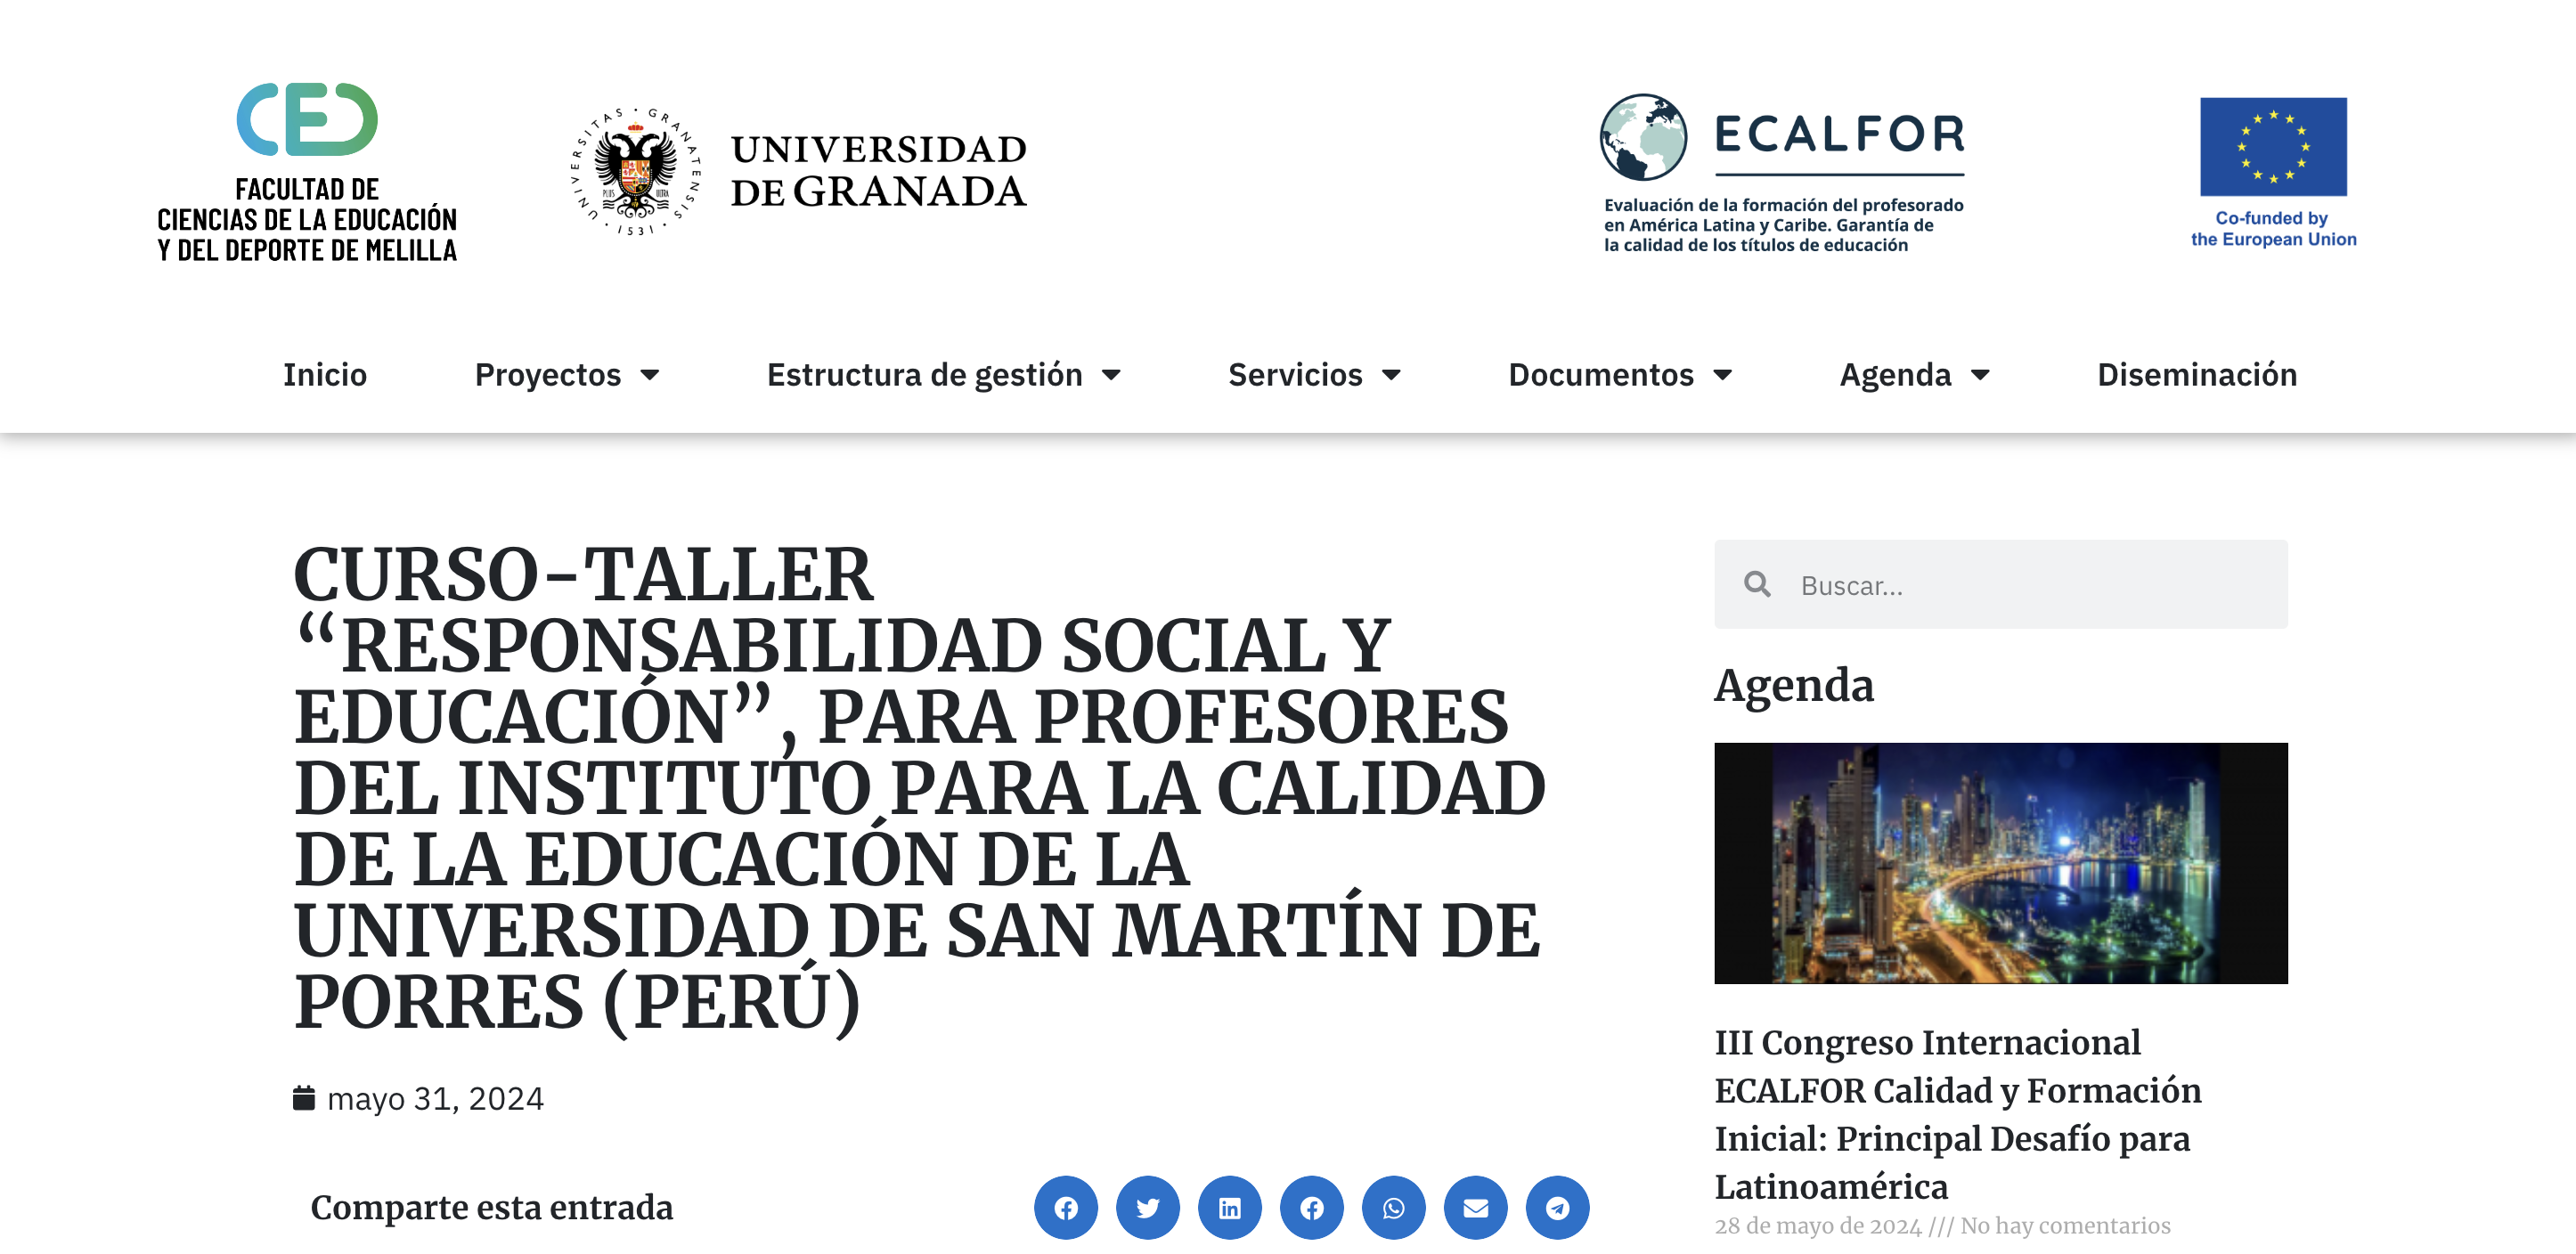 Curso-Taller 'Responsabilidad social y educación' para profesores de la USMP de Perú